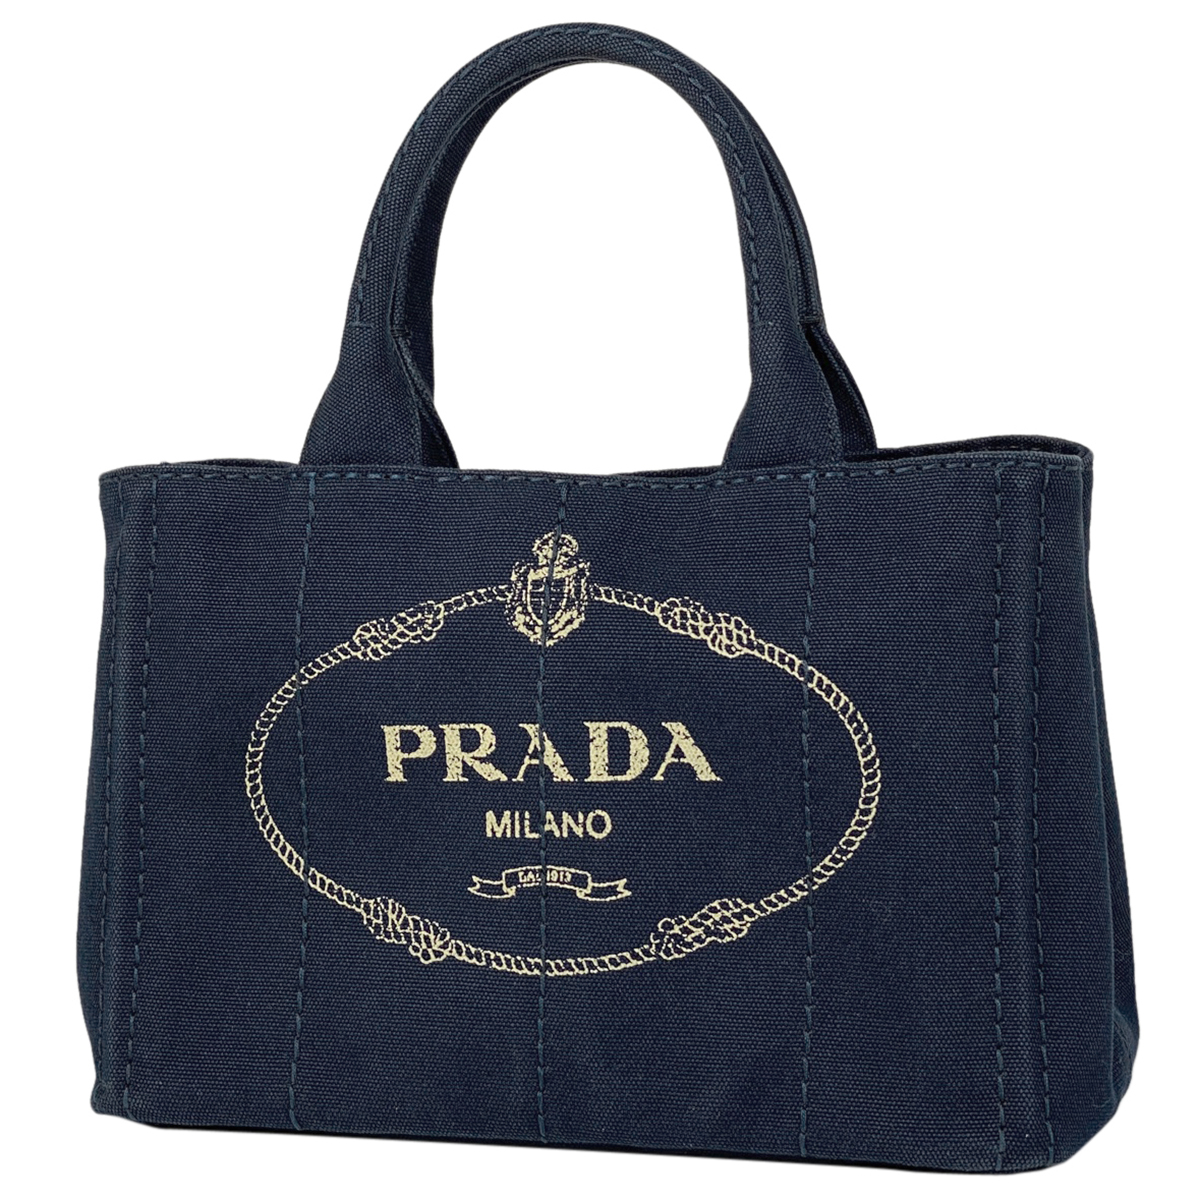 正規販売店 プラダ PRADA カナパ トート ハンドバッグ ショルダー